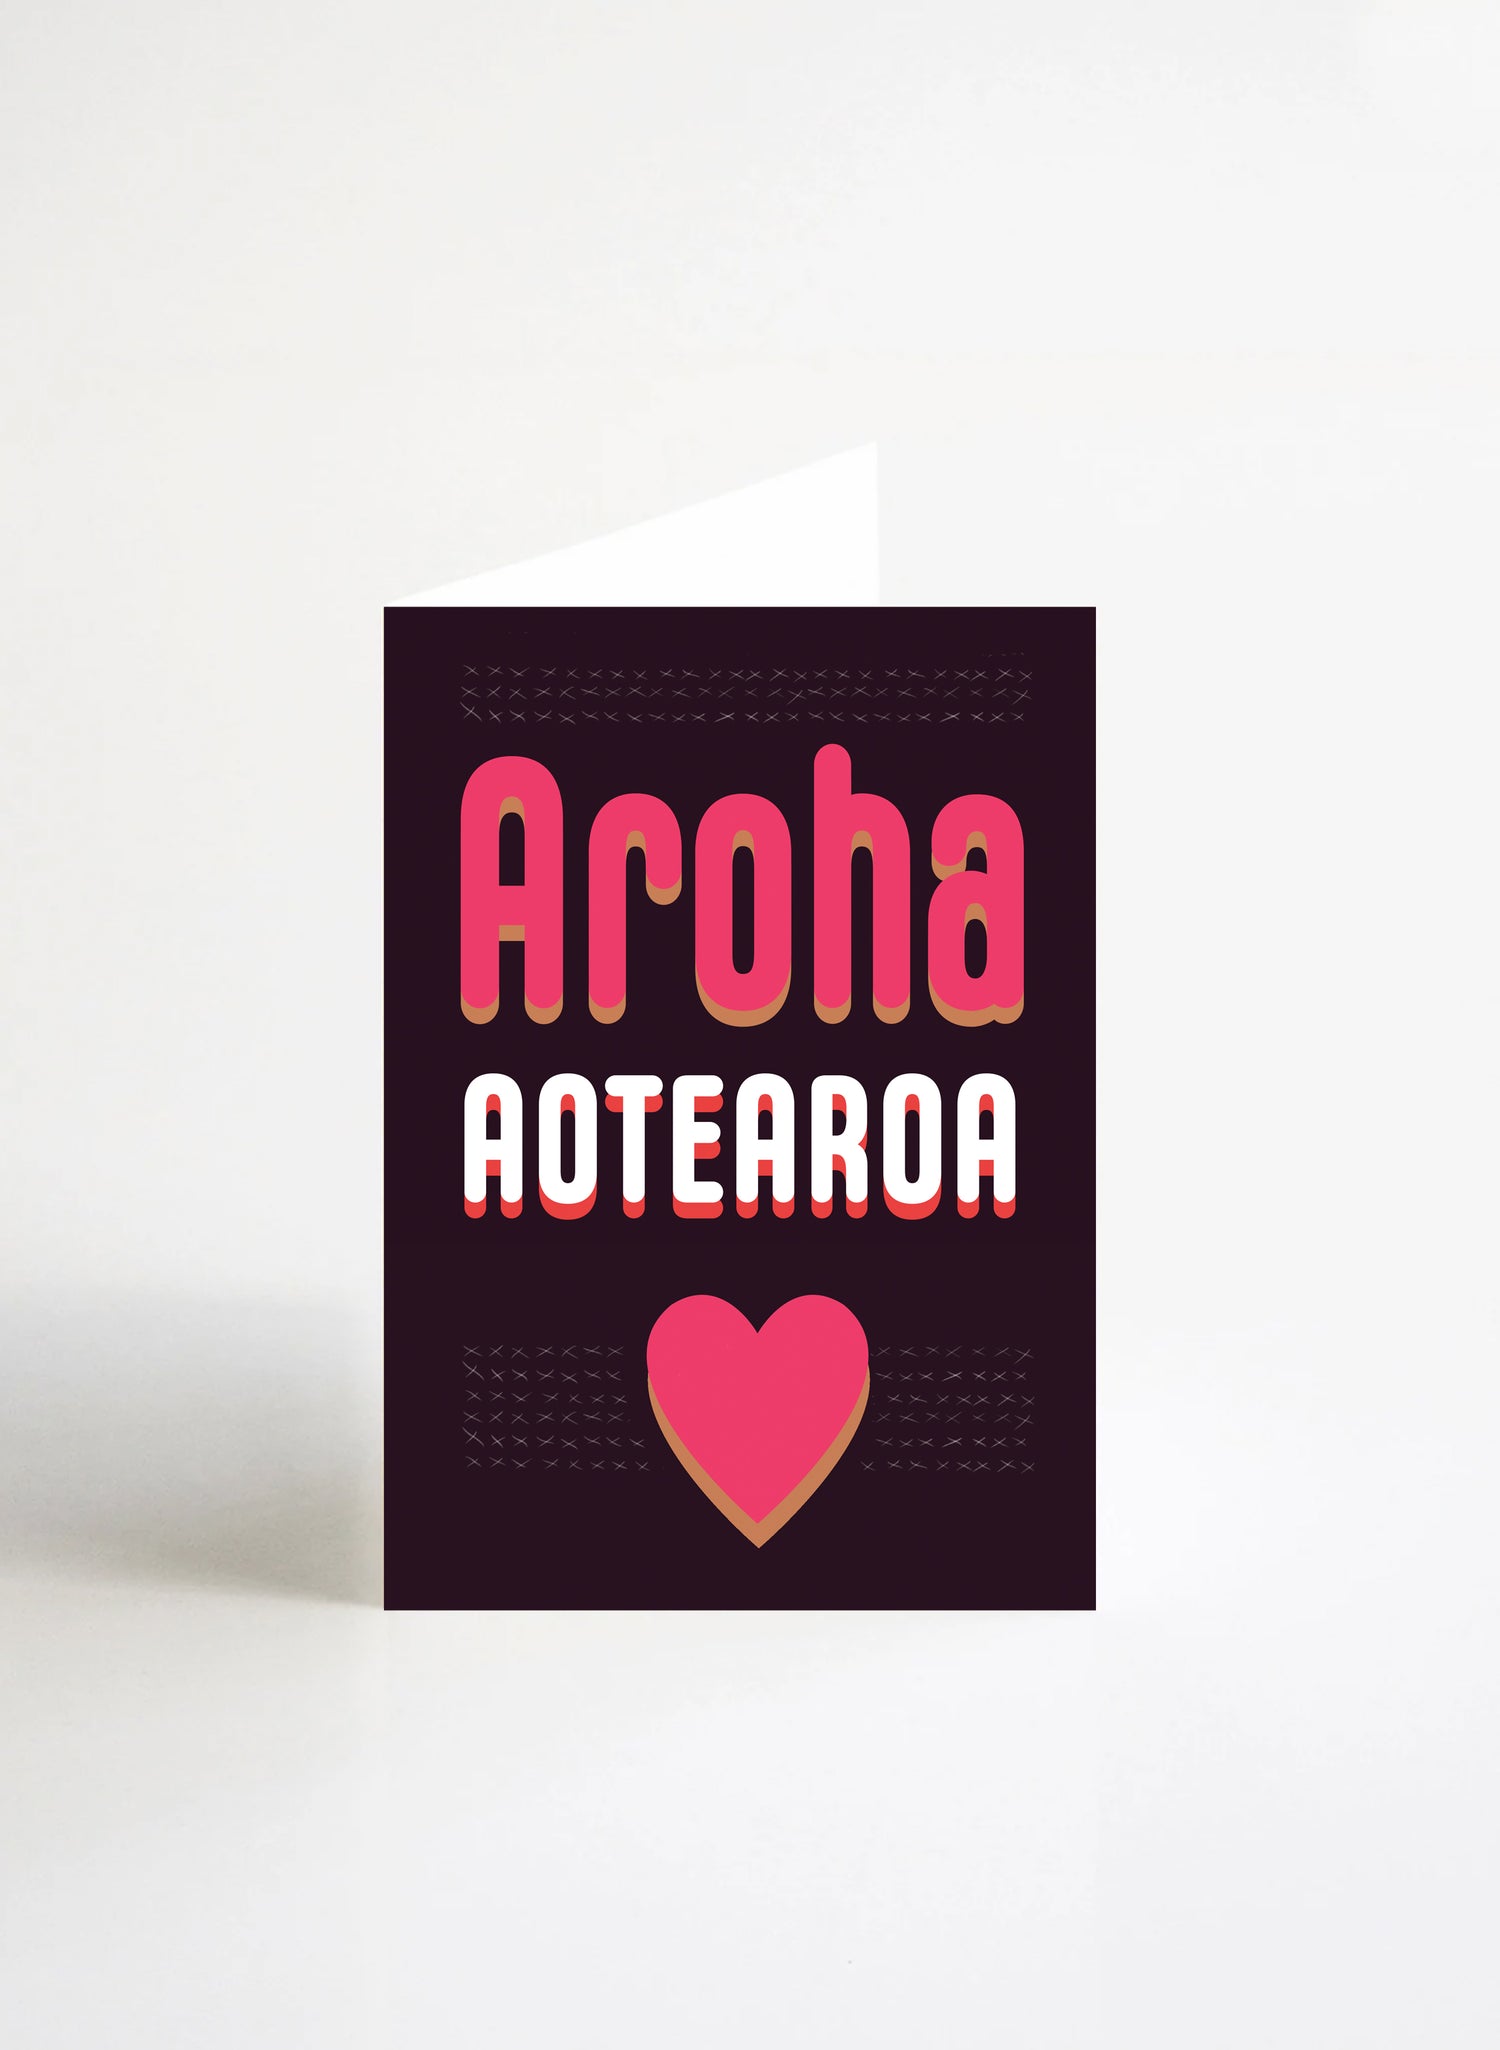 Aroha Aotearoa